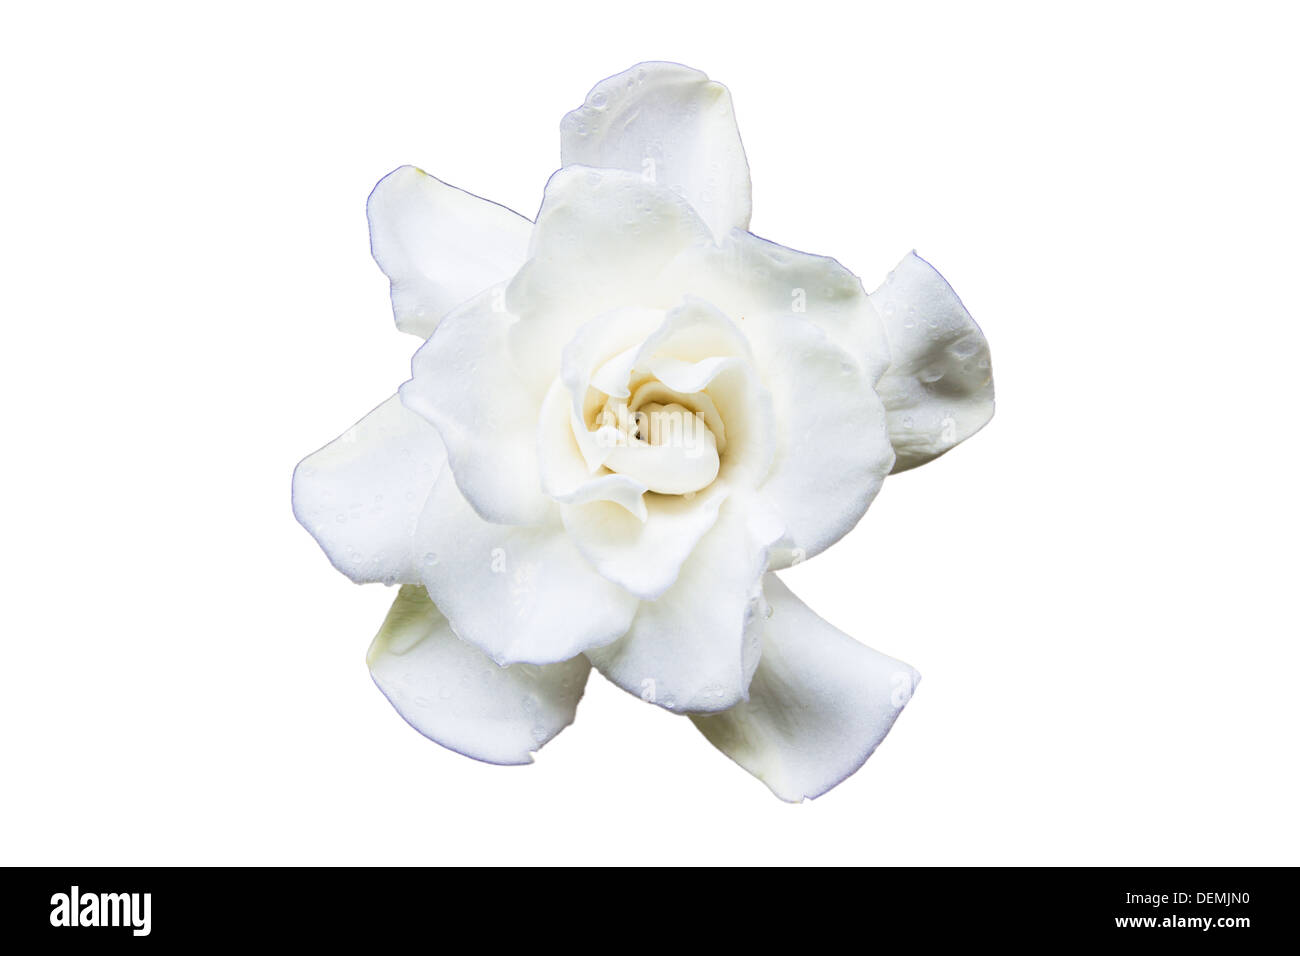 Flowering Gardenia on a white background Stock Photo